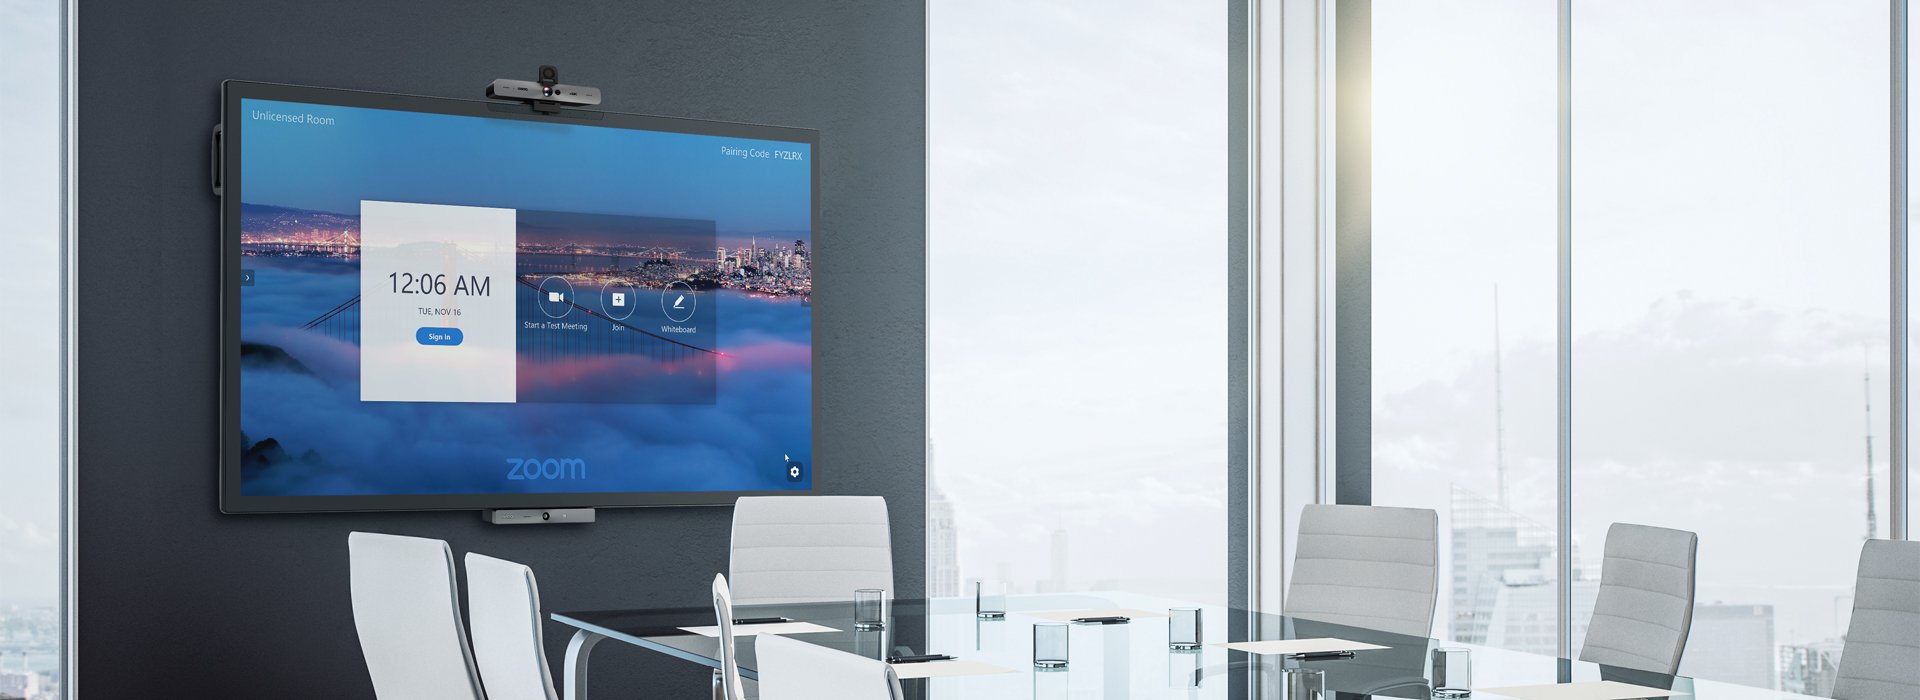 BenQ Zoom-certified meeting room solutions